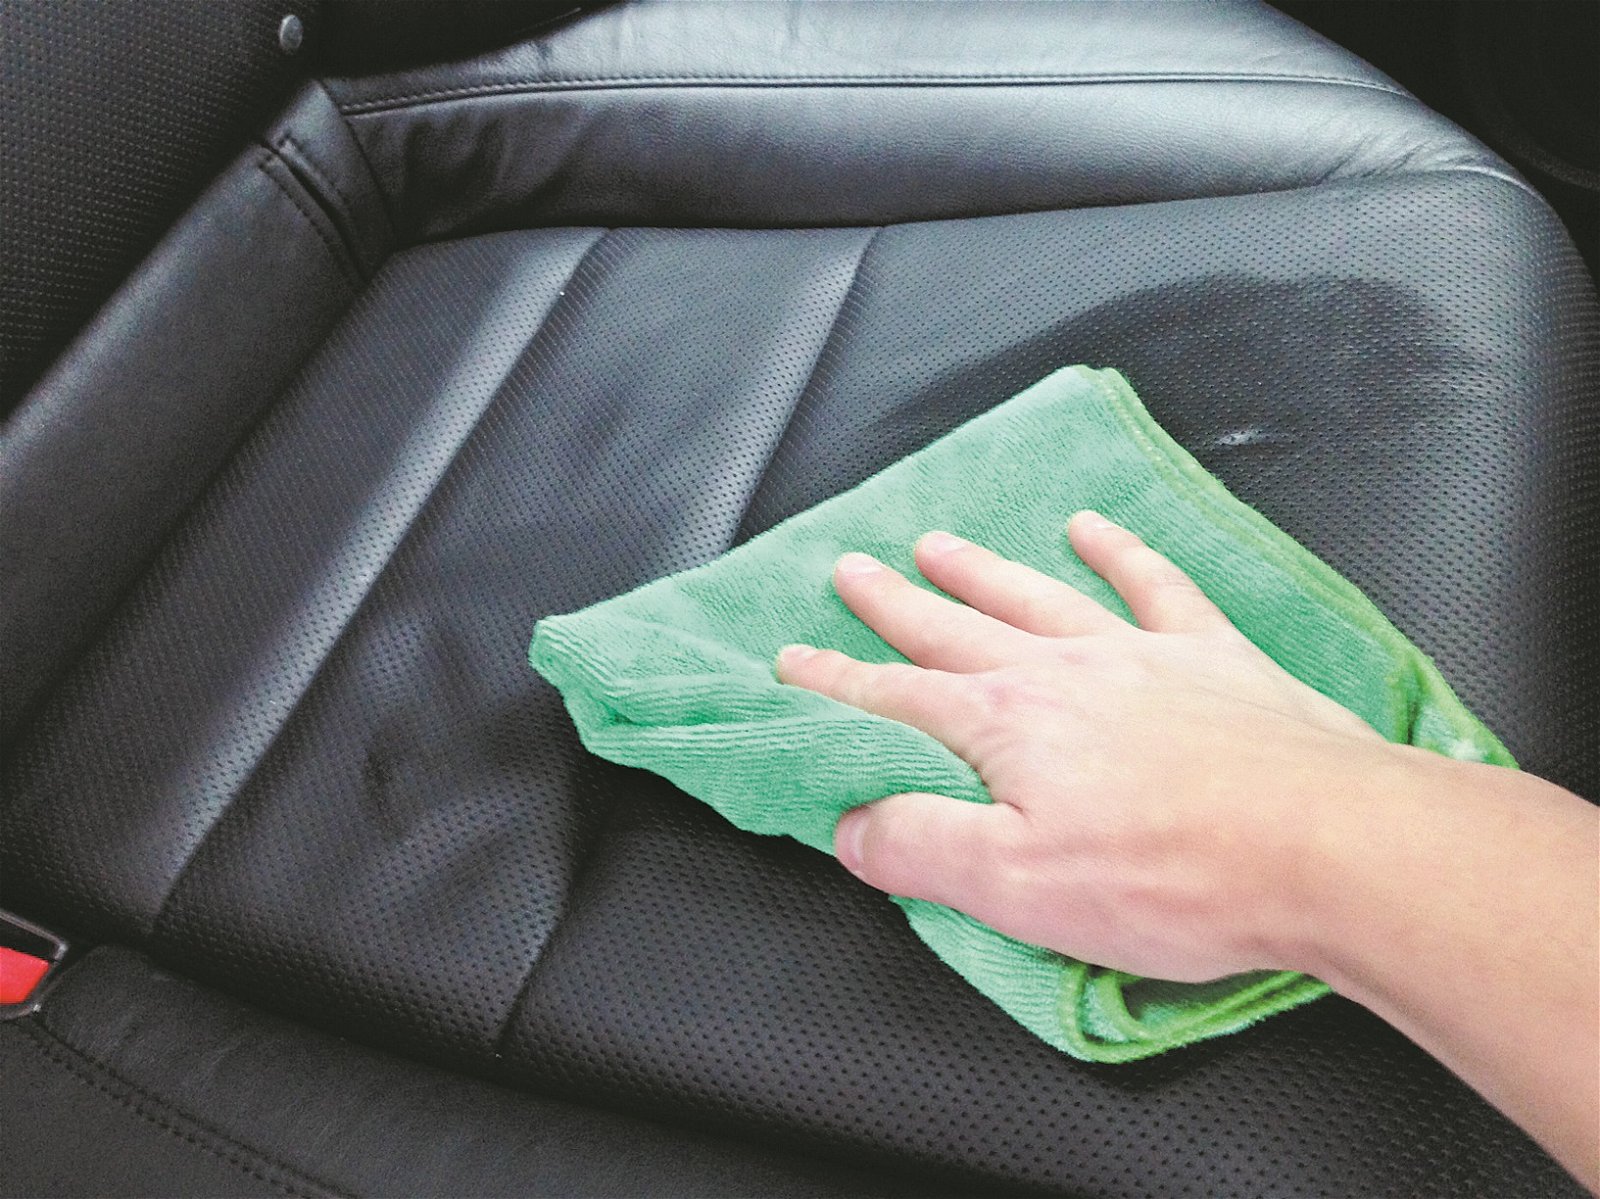 车内座椅由于和人体“亲密接触”，应随时保持干净卫生。